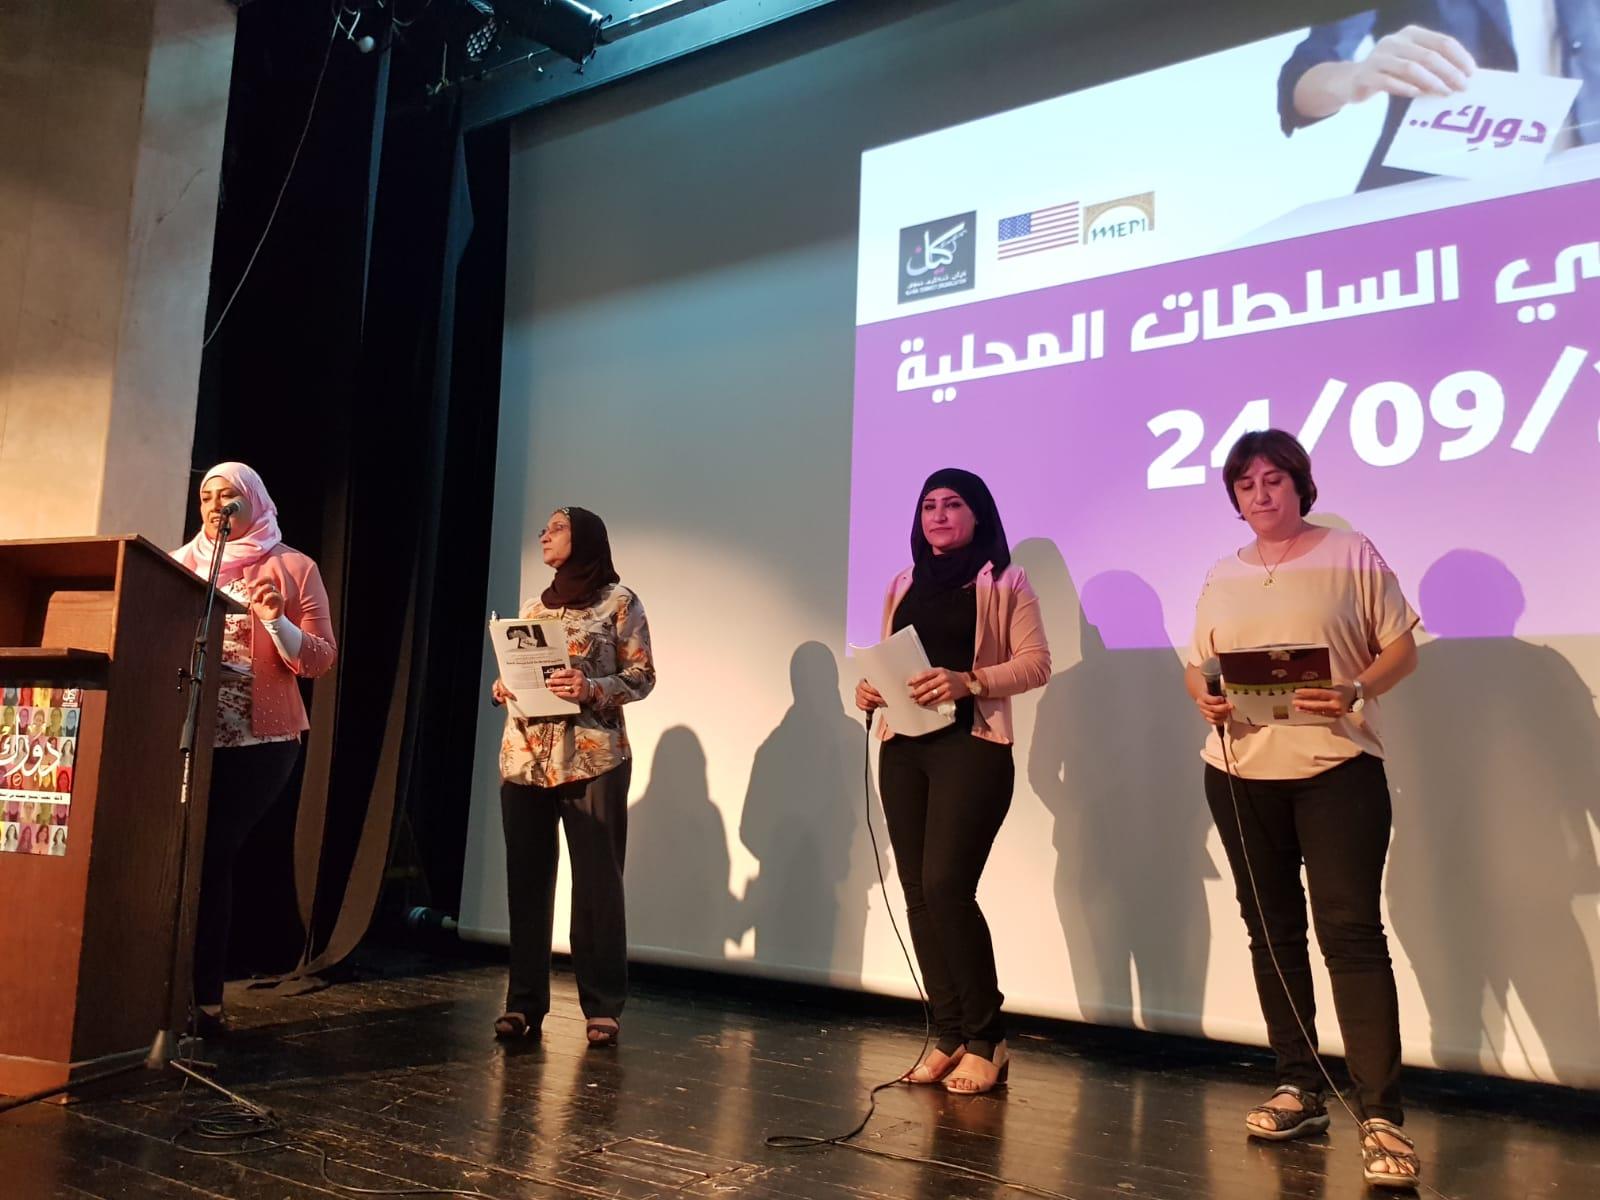 الناصرة: انعقاد مؤتمر كيان لتمثيل النساء في السلطات المحلية